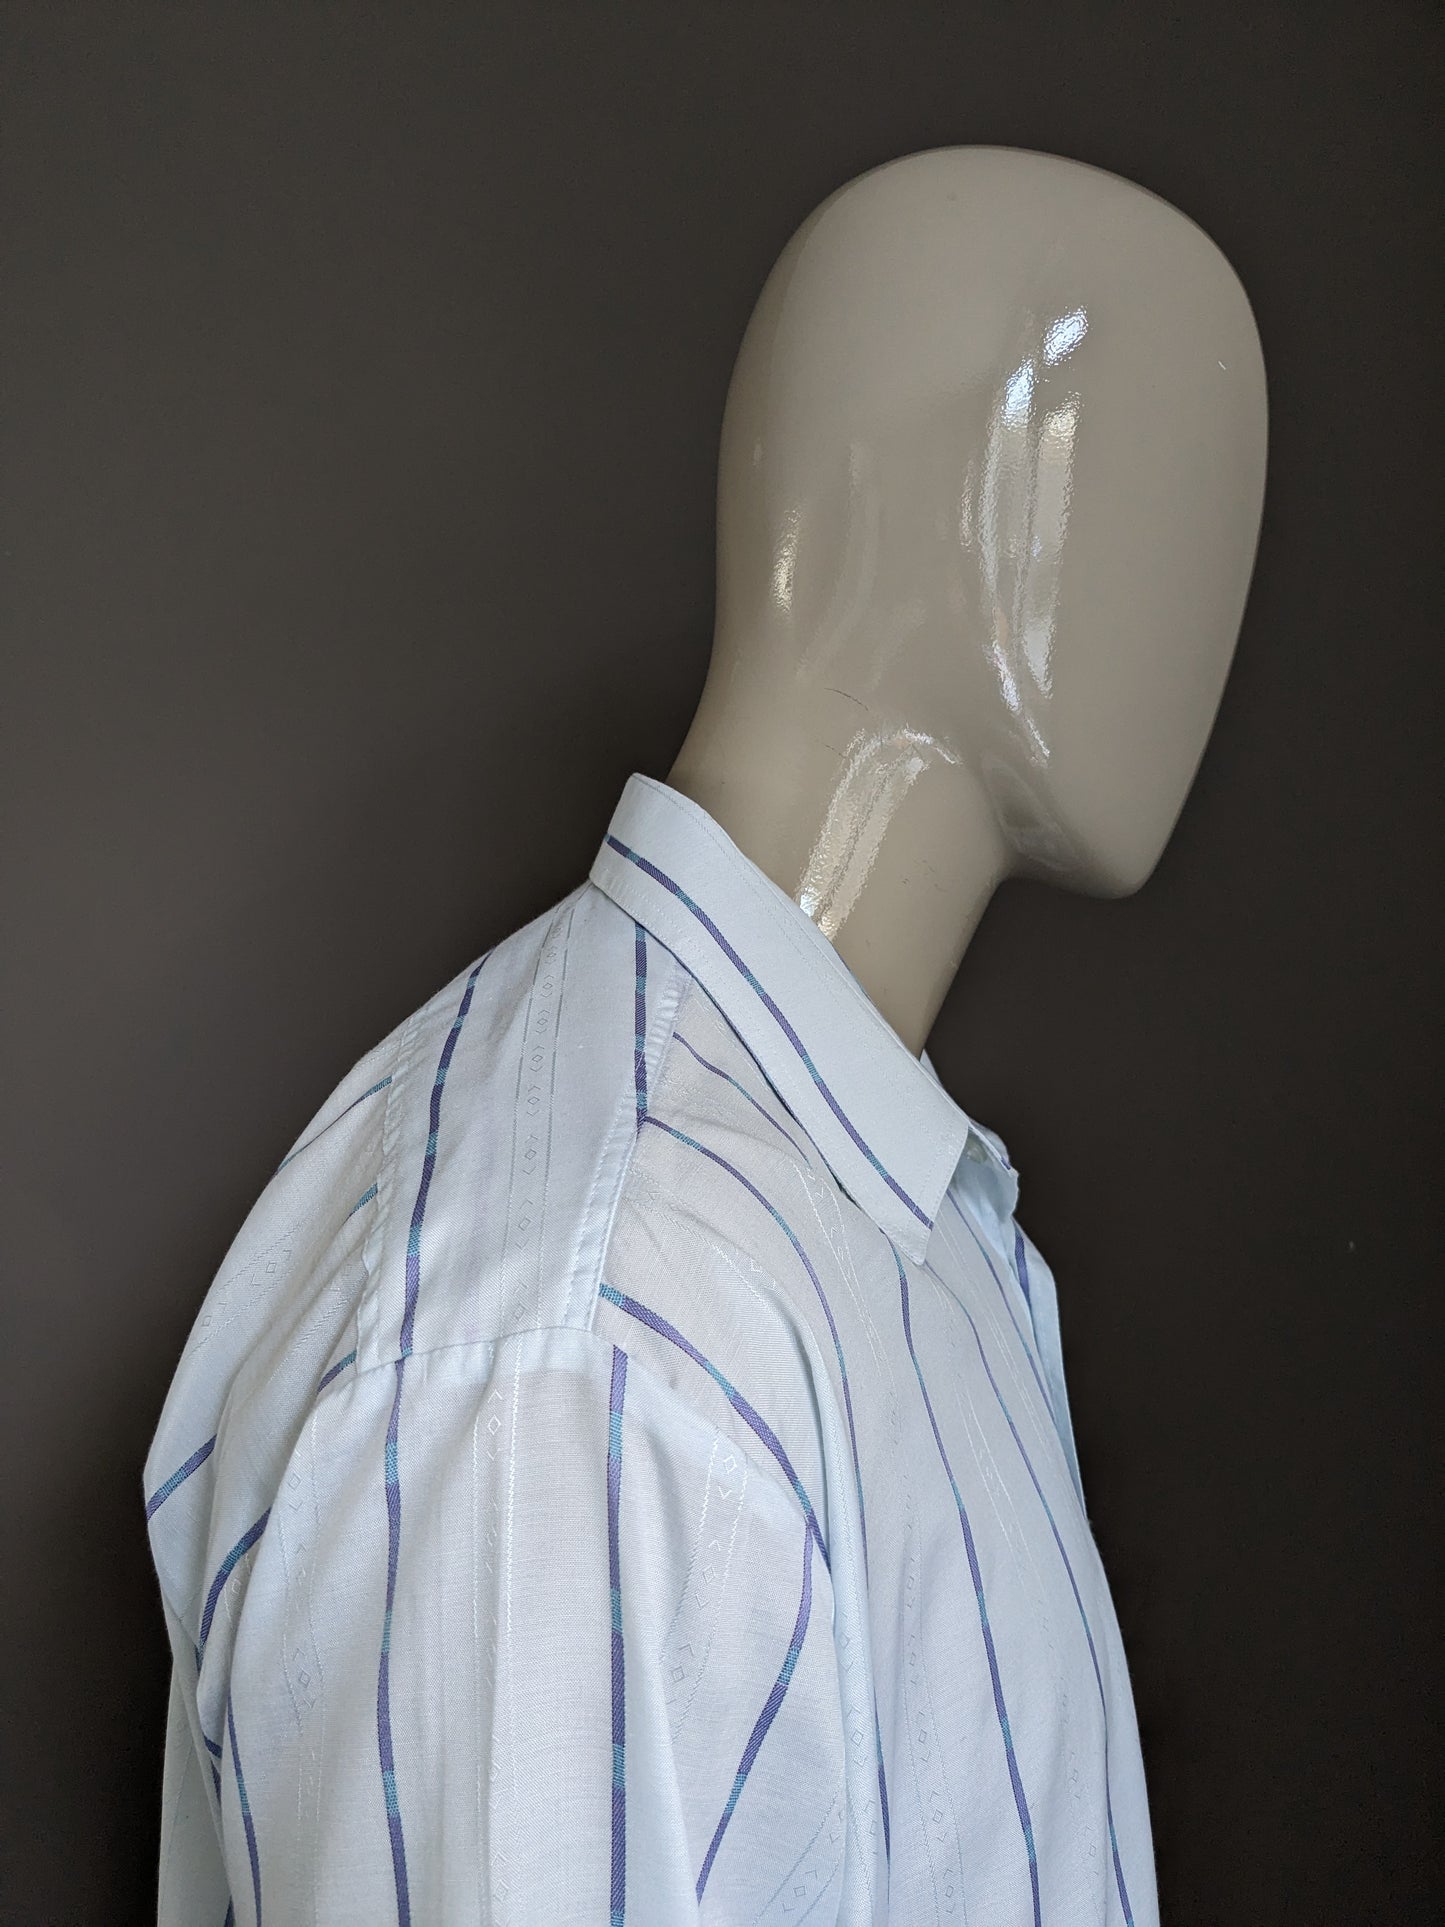 Camicia vintage Jacqueline de Tancot degli anni '70 con colletto punti. Motivo blu chiaro. Dimensione XL / XXL-2XL.